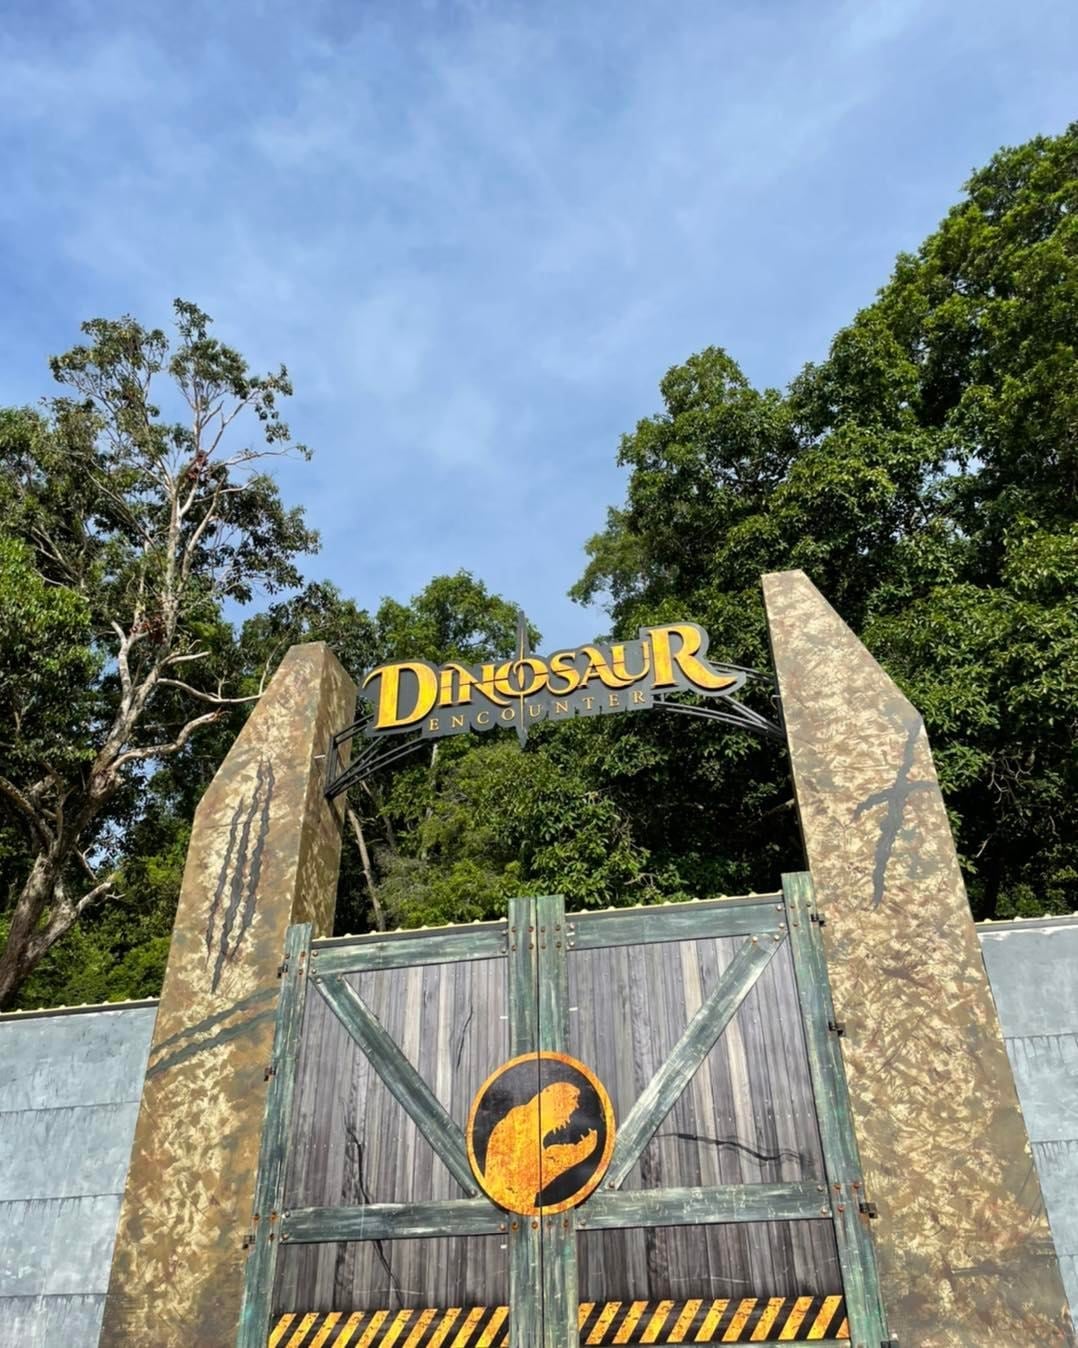 Dinosaur encounter kuantan